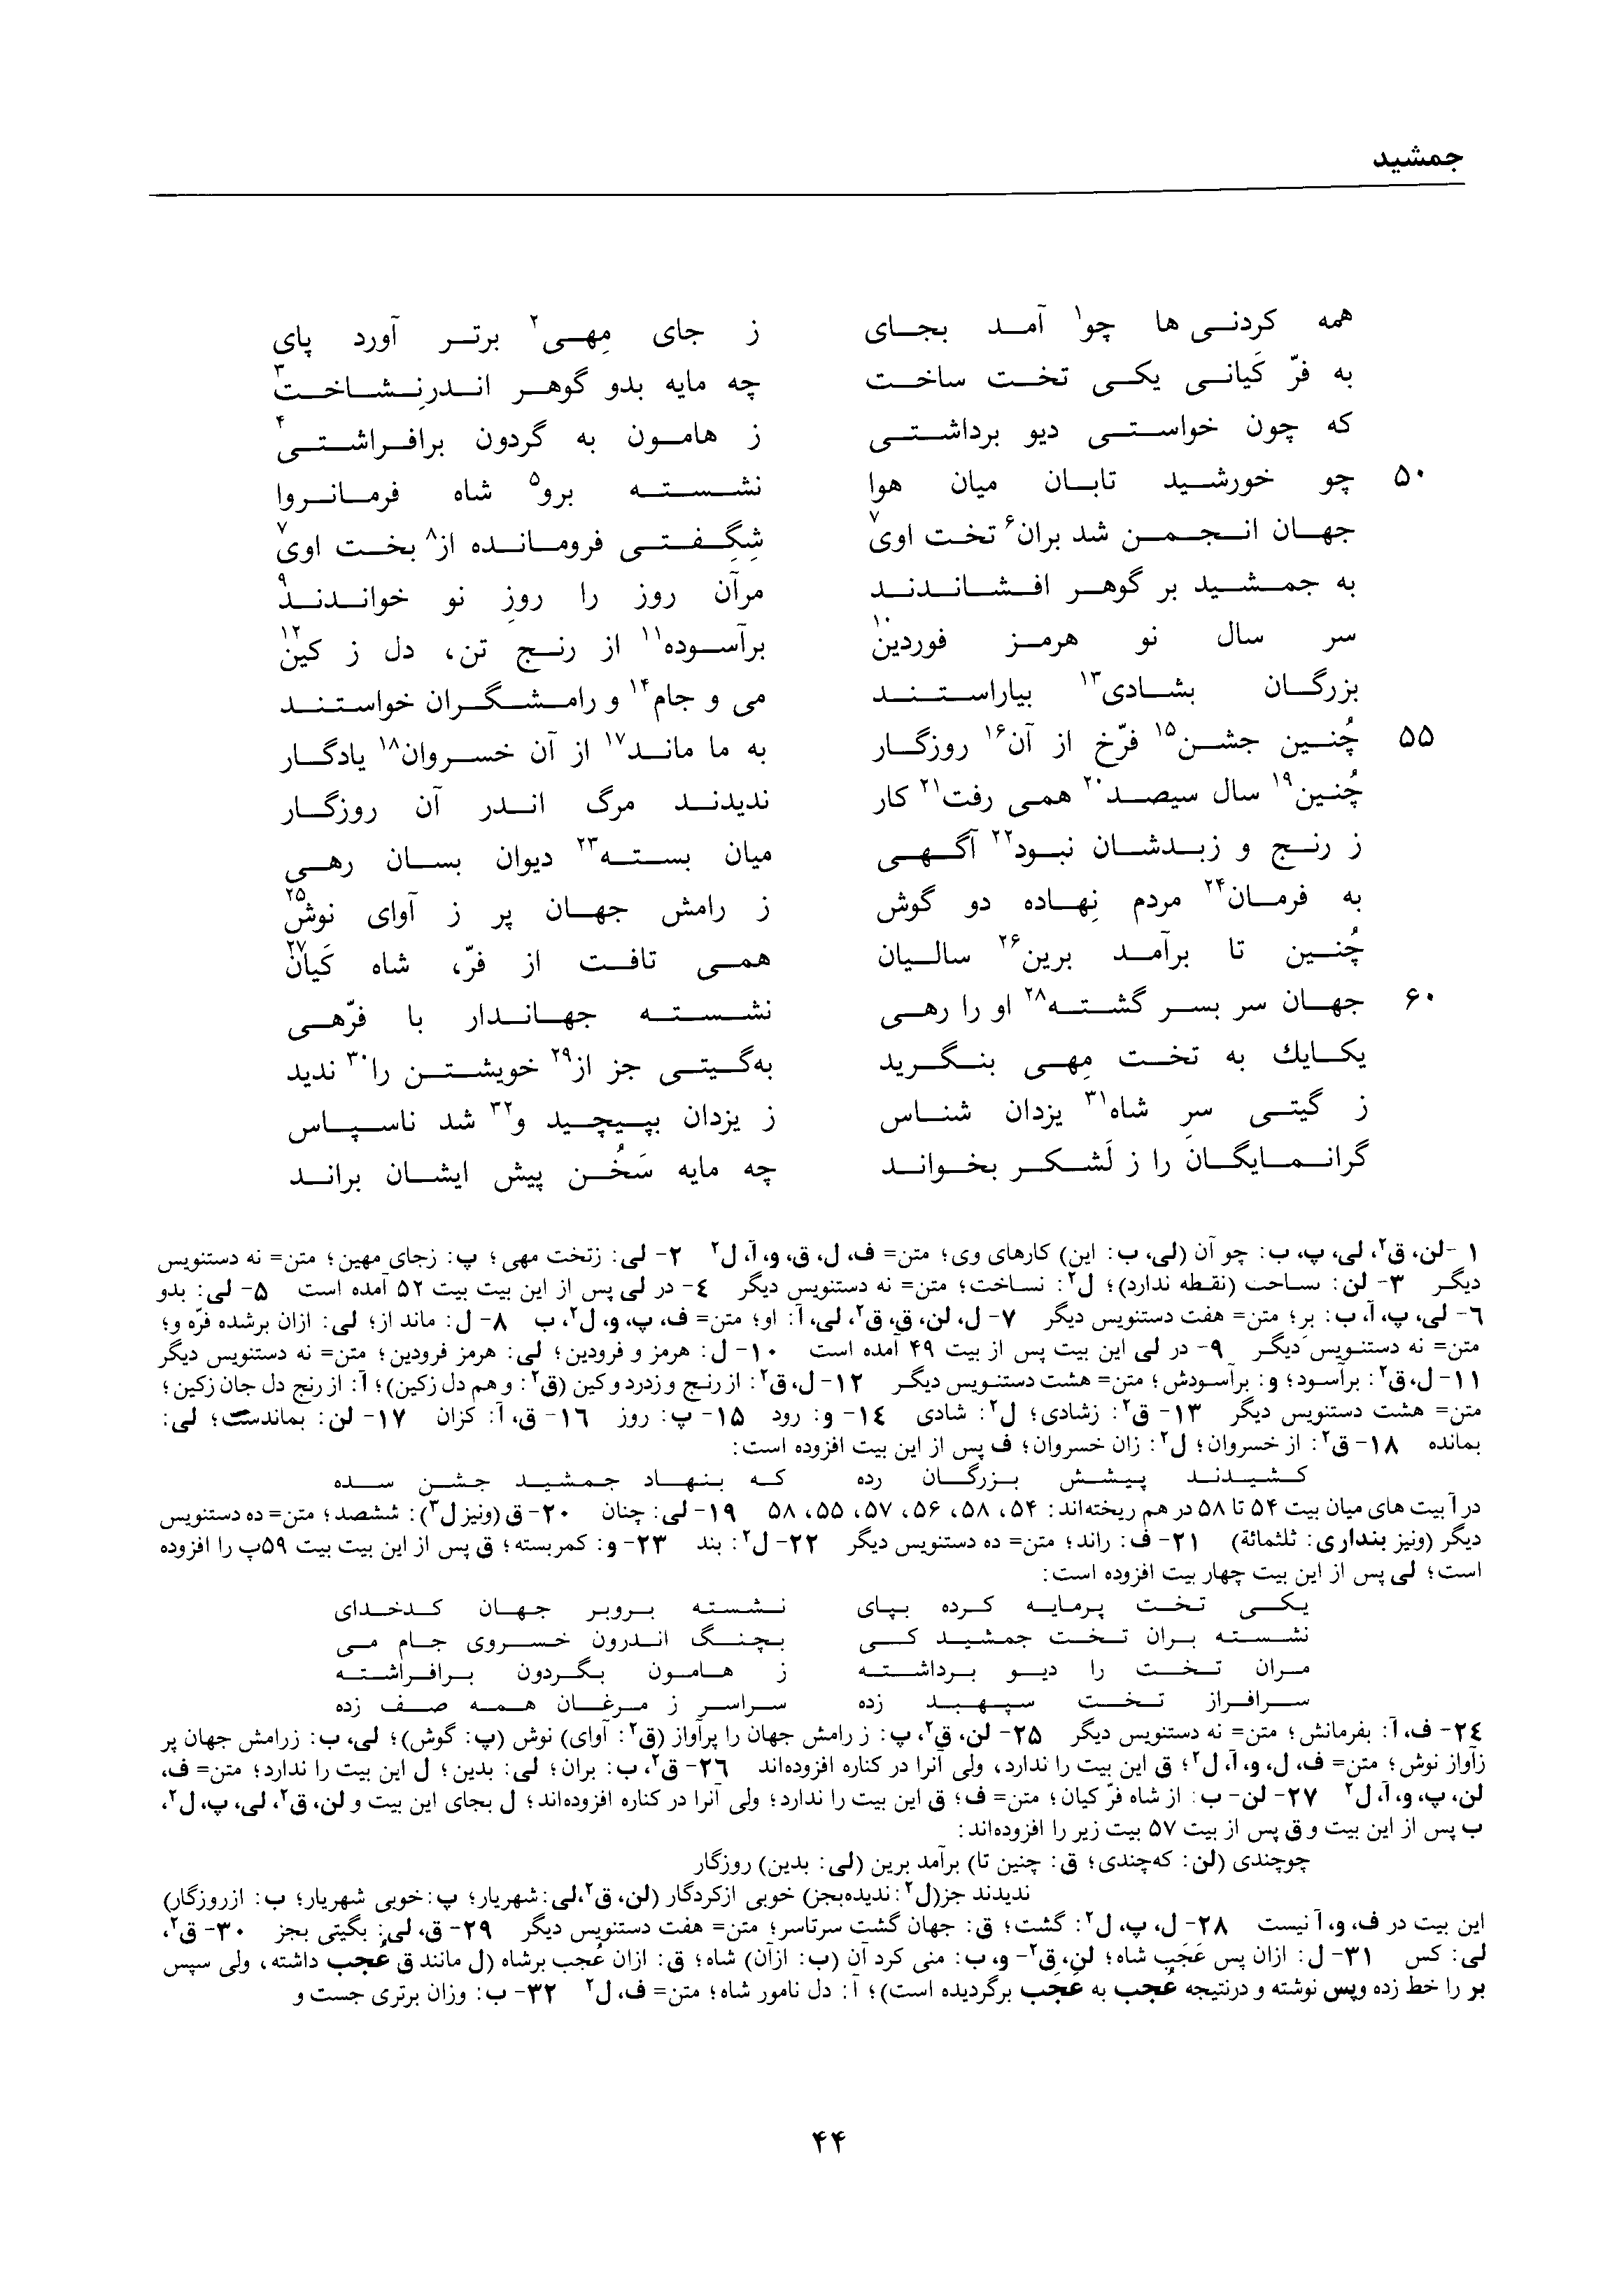 vol. 1, p. 44